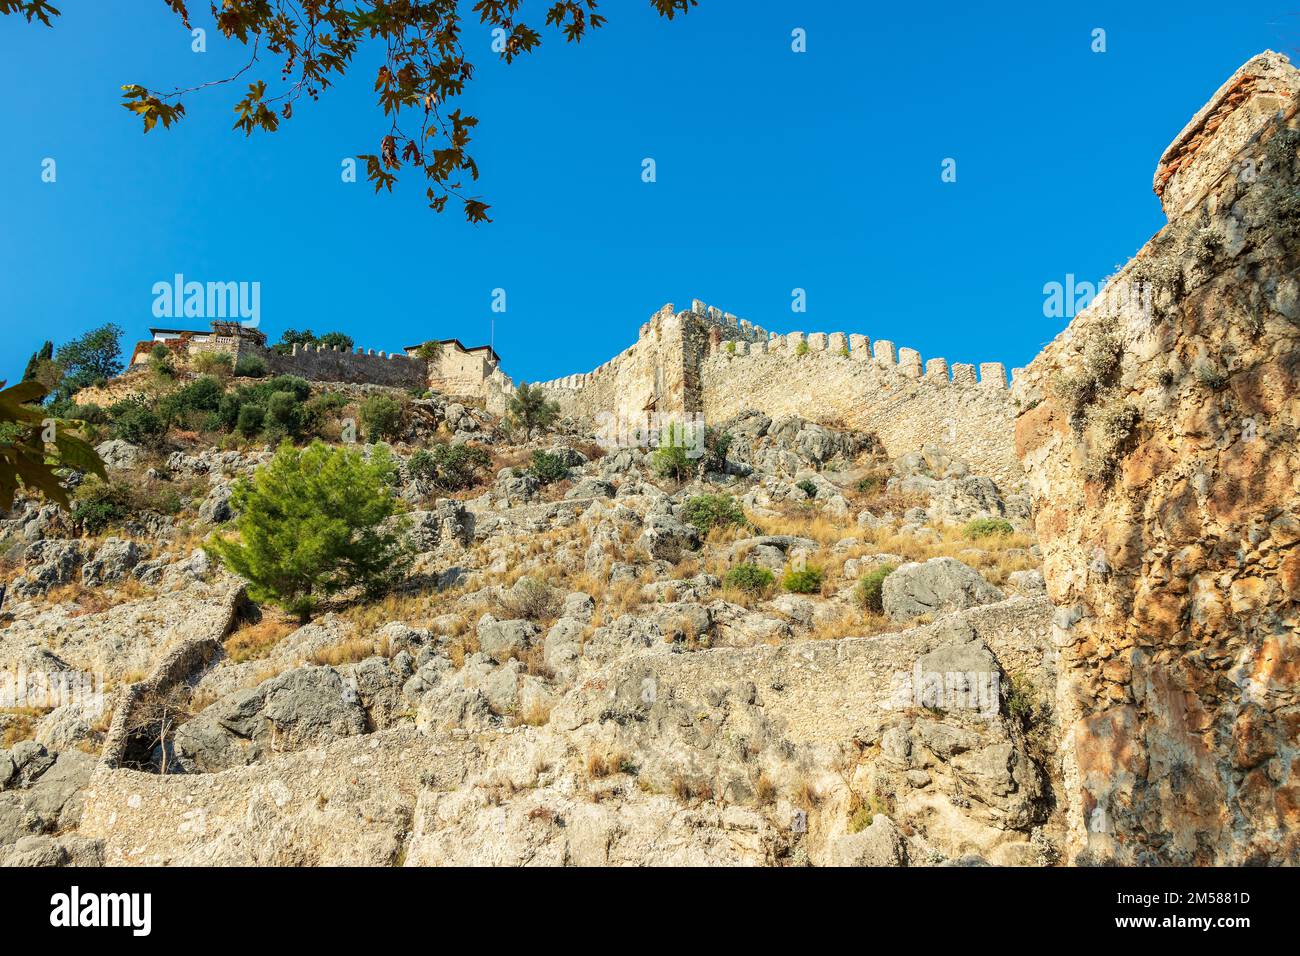 Le mura merlate del Castello di Alanya nella Turchia meridionale appartengono alla magnifica rovina di Seljuk con il nome locale di Alanya Kalesi. Foto Stock